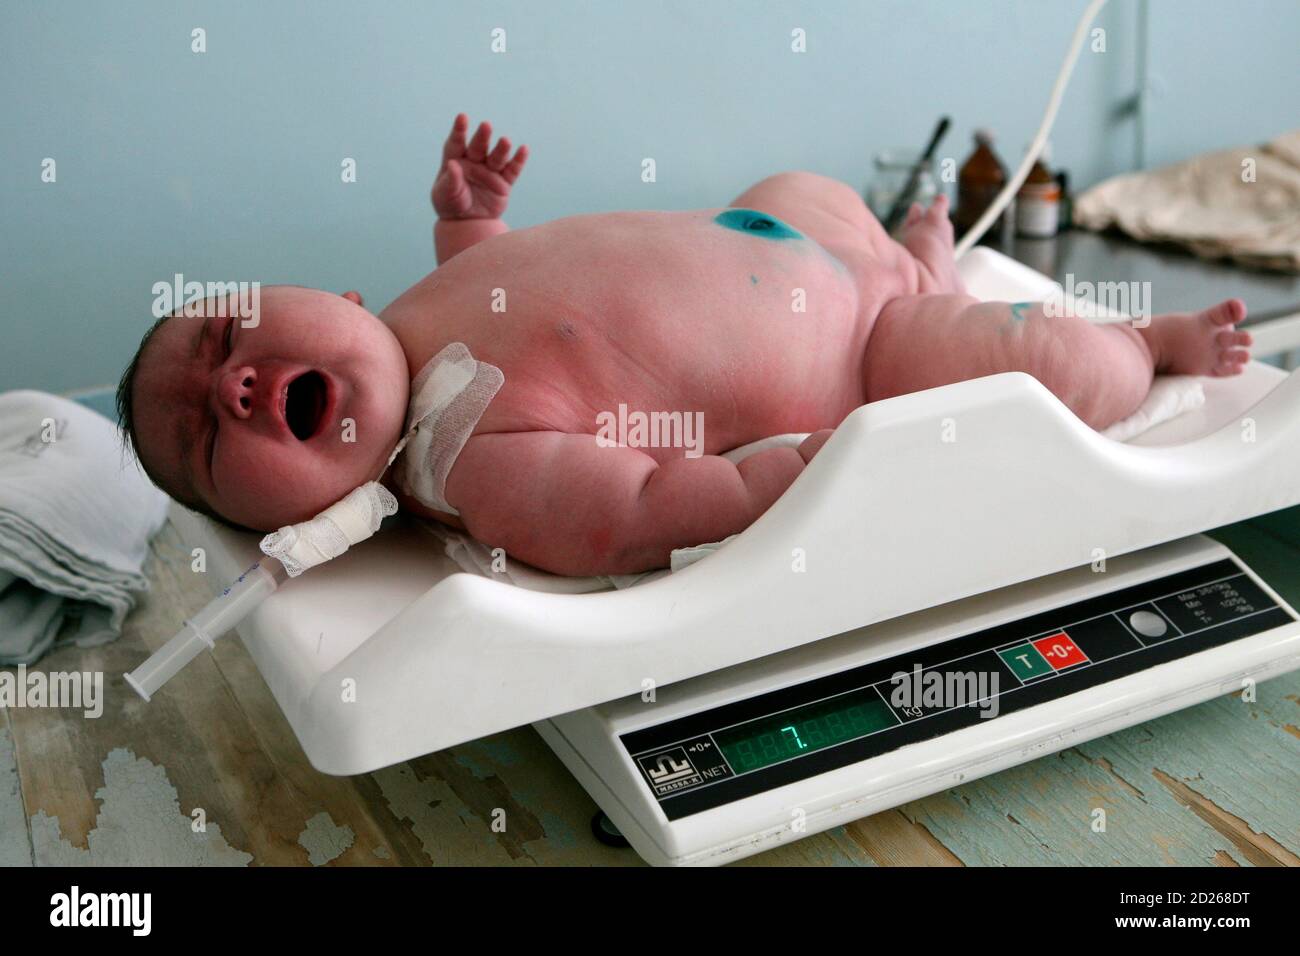 La niña Nadia, que pesó 7.75 kg (17.1 libras) después del nacimiento, se encuentra en una escala en la ciudad siberiana de Barnaul el 26 de septiembre de 2007. Una madre siberiana ha hecho más que su parte justa para curar el terrible declive de la población de Rusia. Tatyana Khalina sorprendió a su marido dando a luz a una niña de 7.75 kg (17.1 libras) este mes, su duodécimo hijo. REUTERS/Andrey Kasprishin (RUSIA) Foto de stock